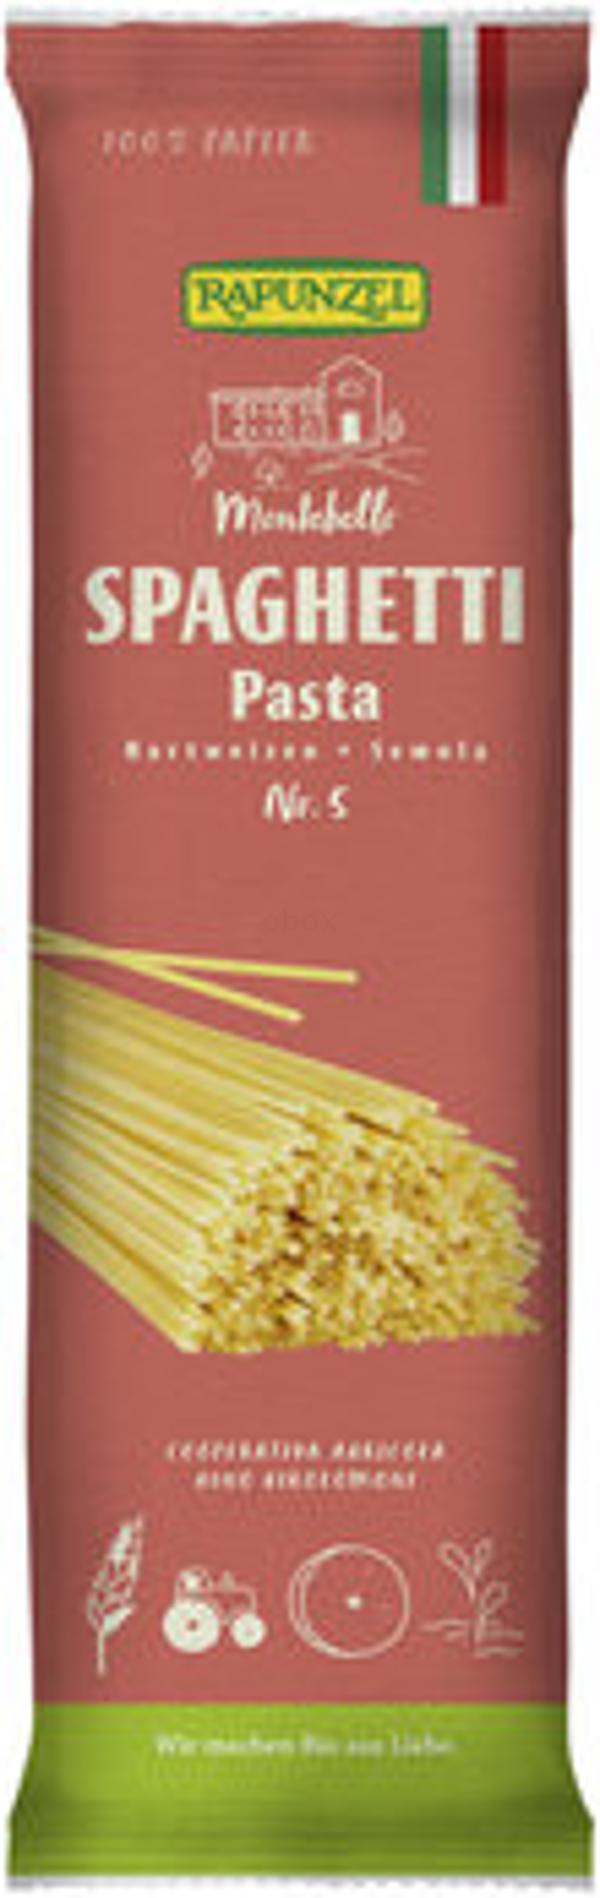 Produktfoto zu Spaghetti Semola, no.5